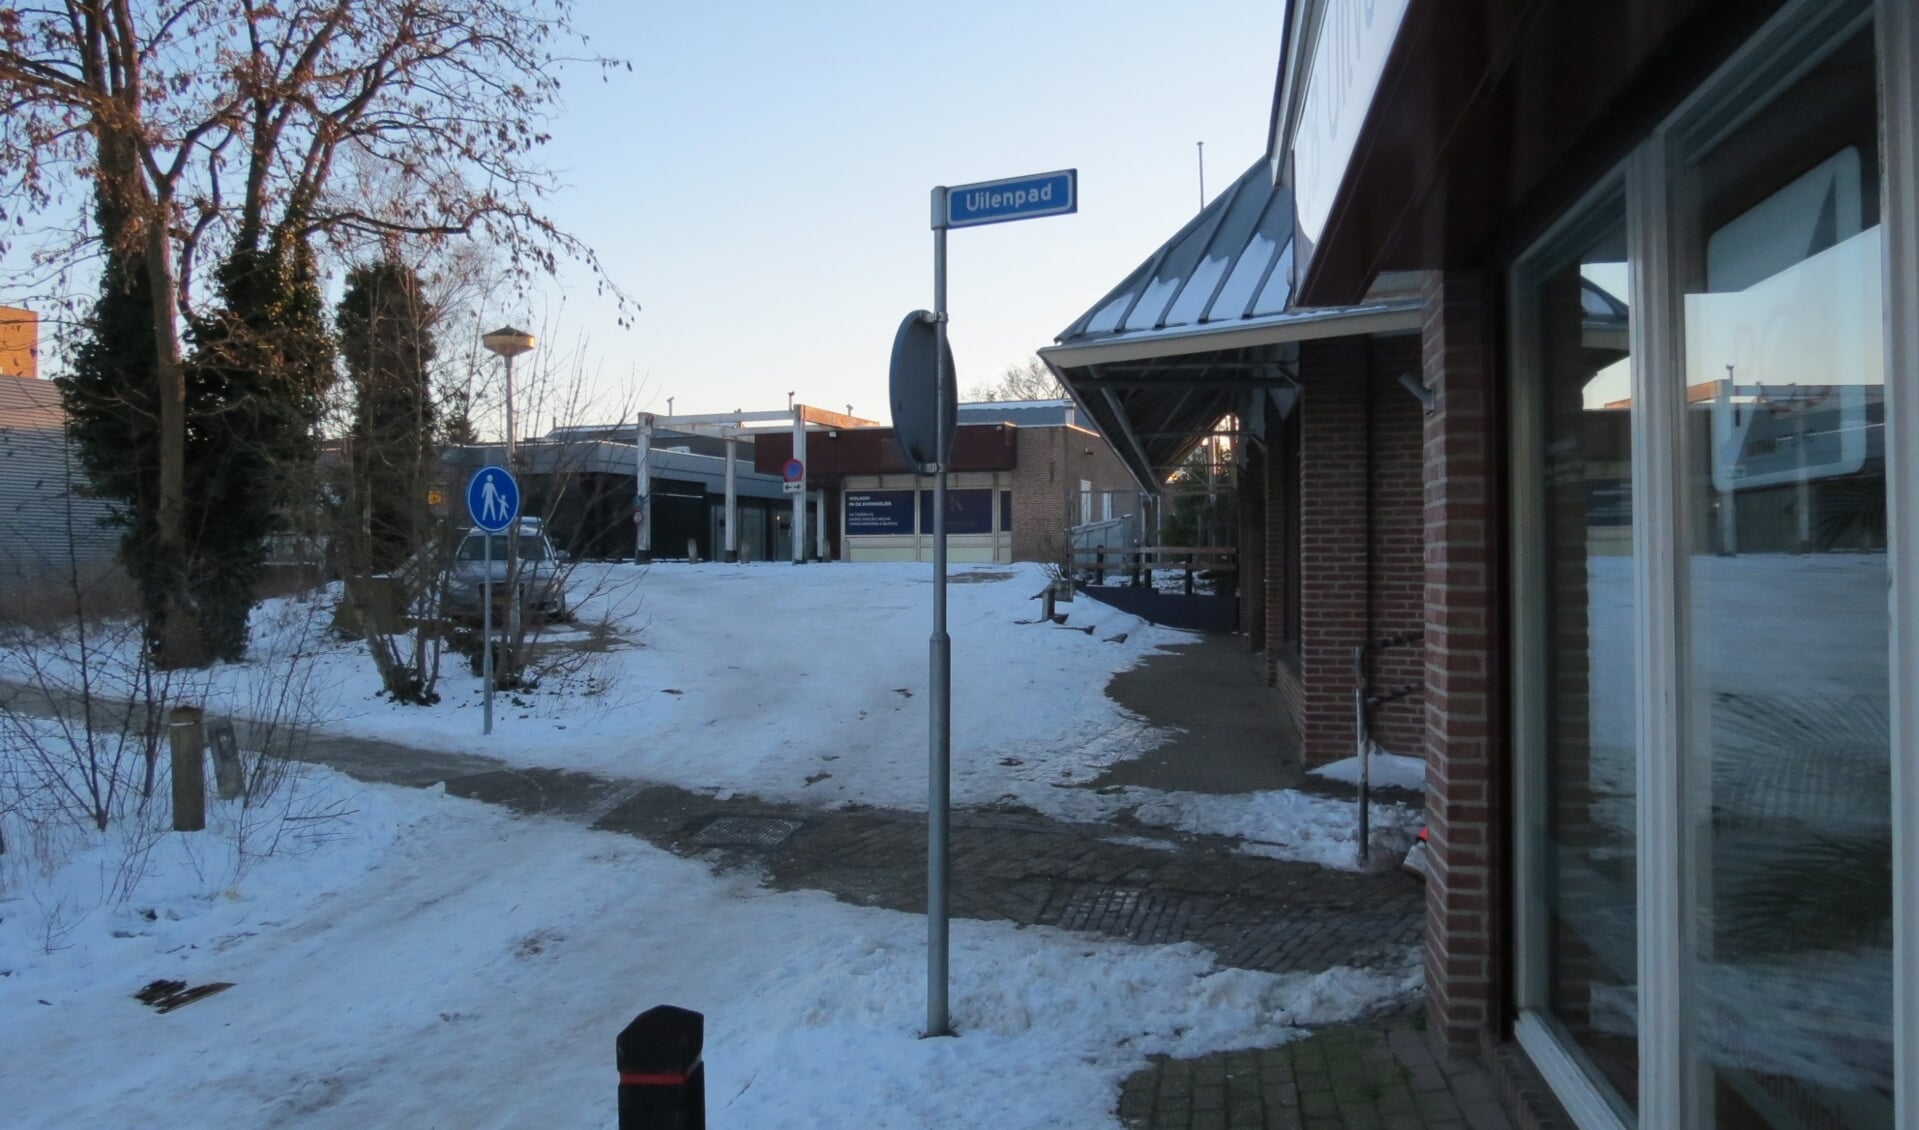 Het Uilenpad dat toegang geeft tot De Kwinkelier.